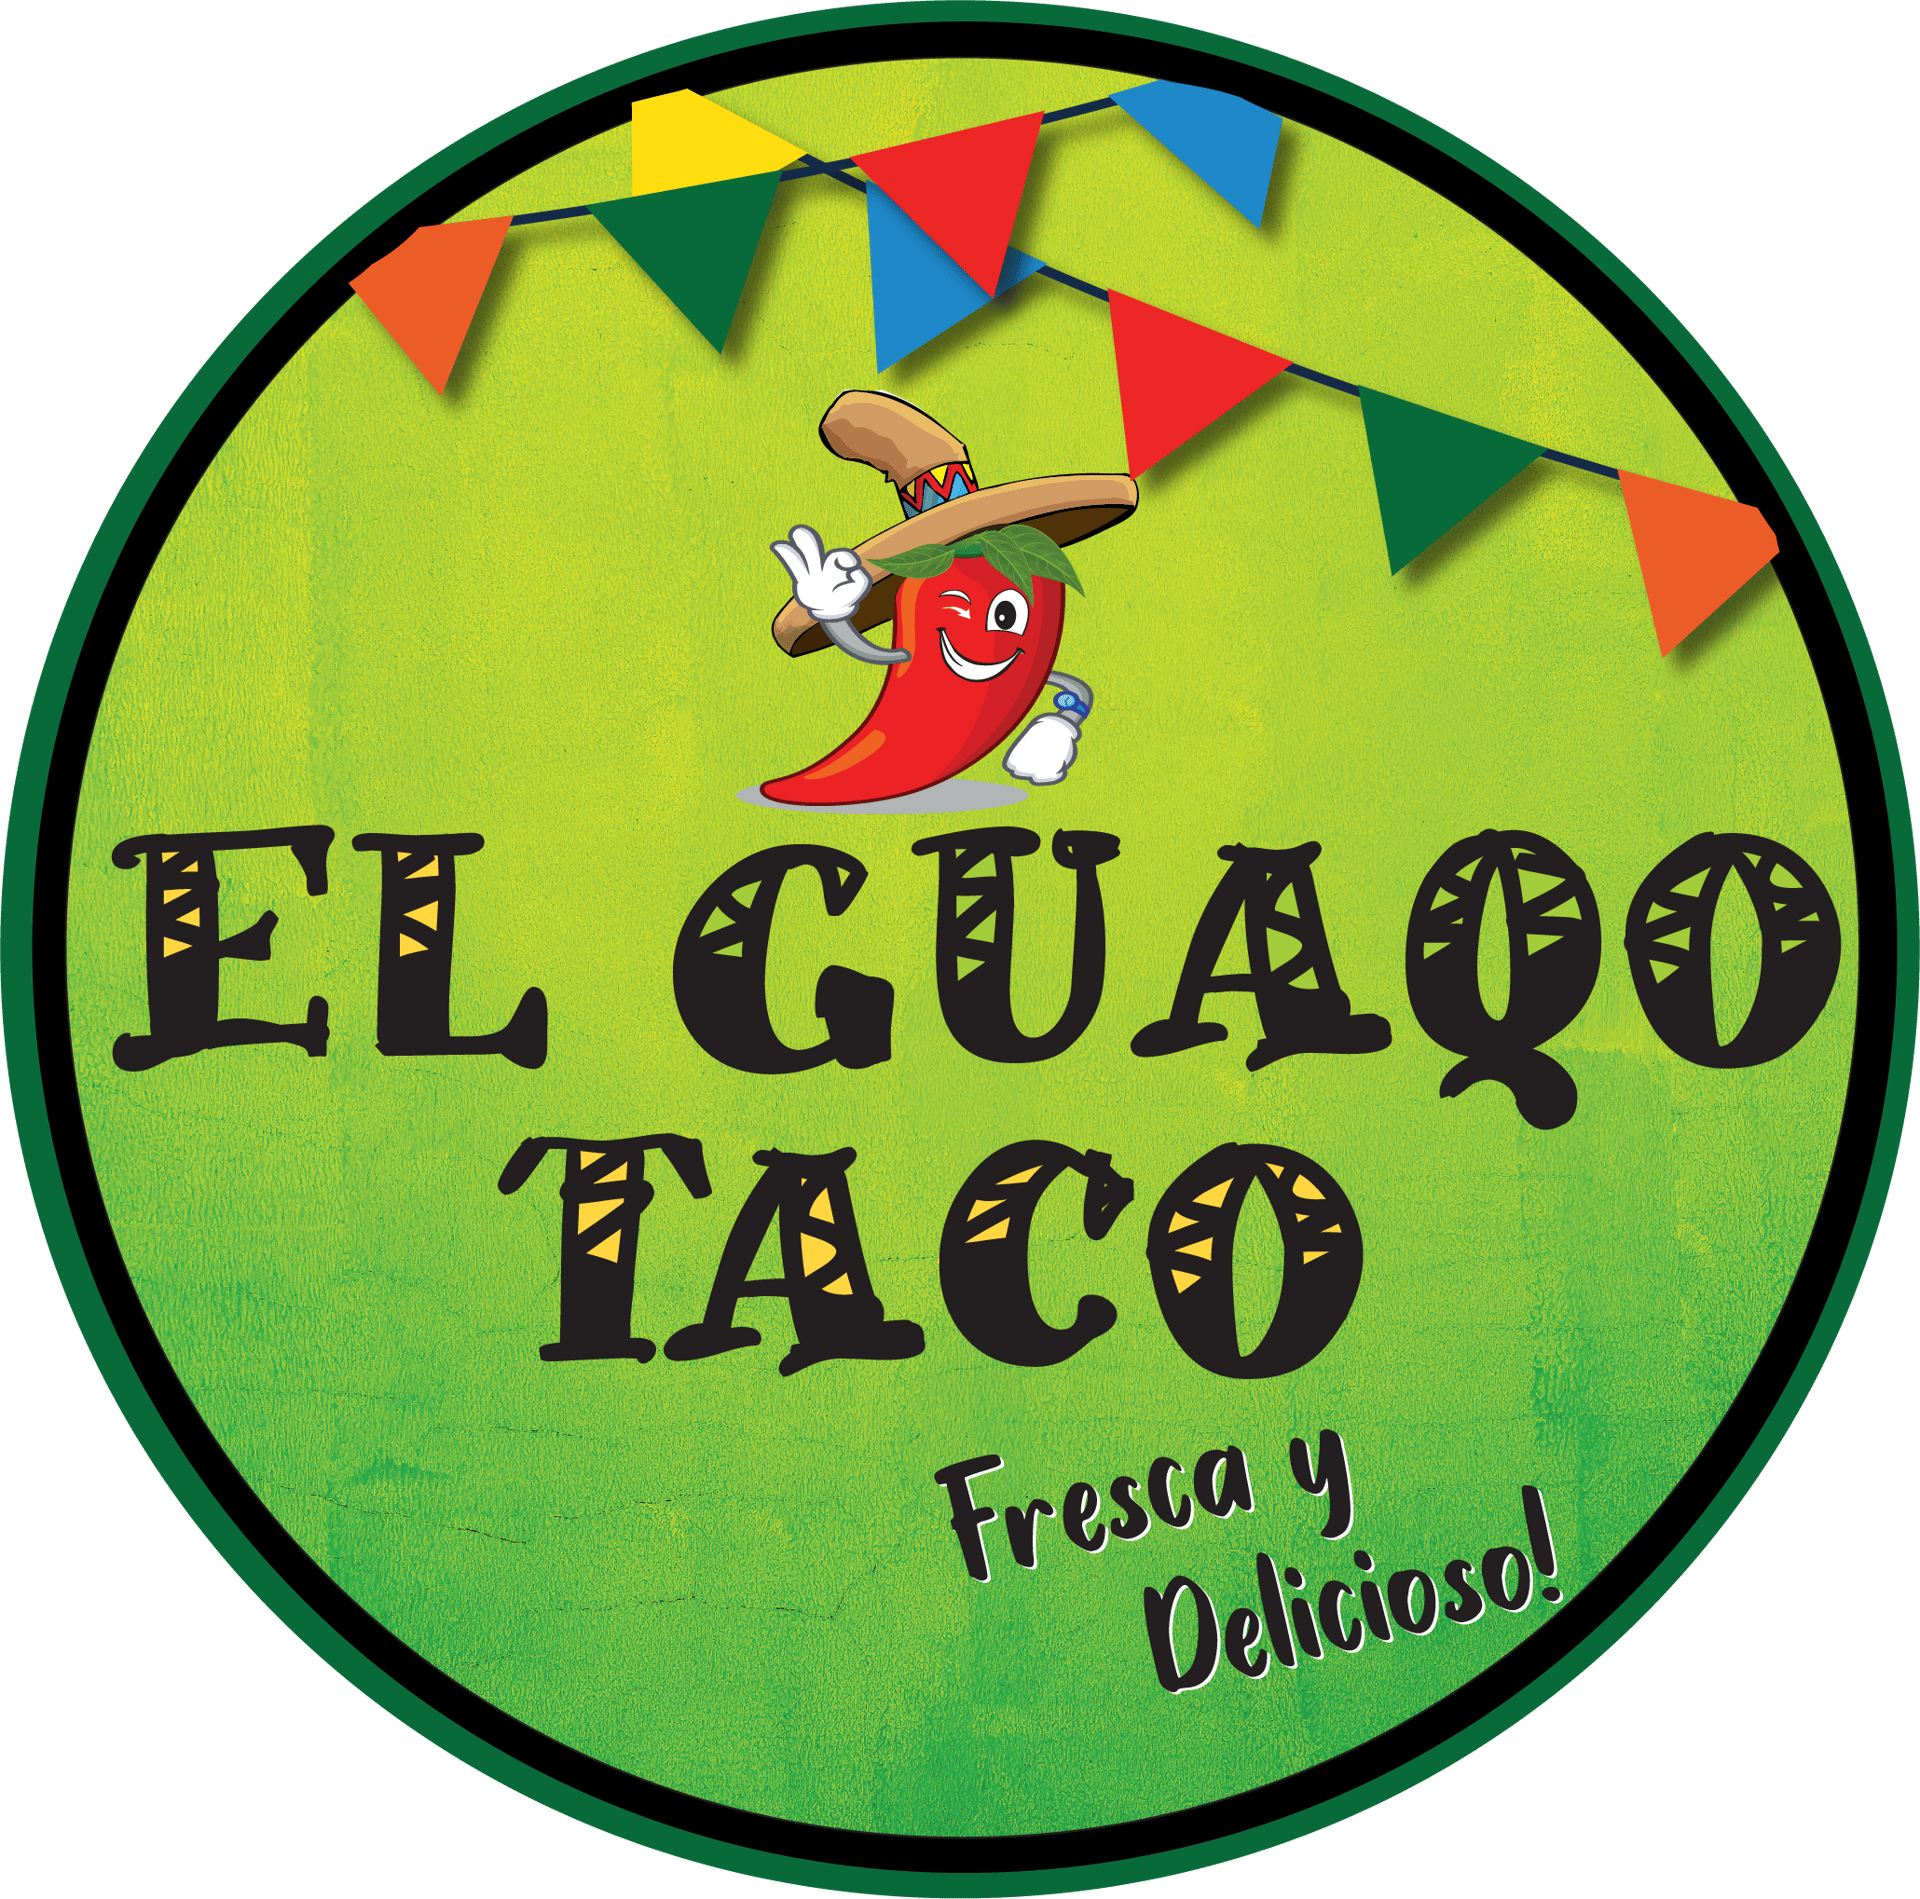 El Guaqo Taco